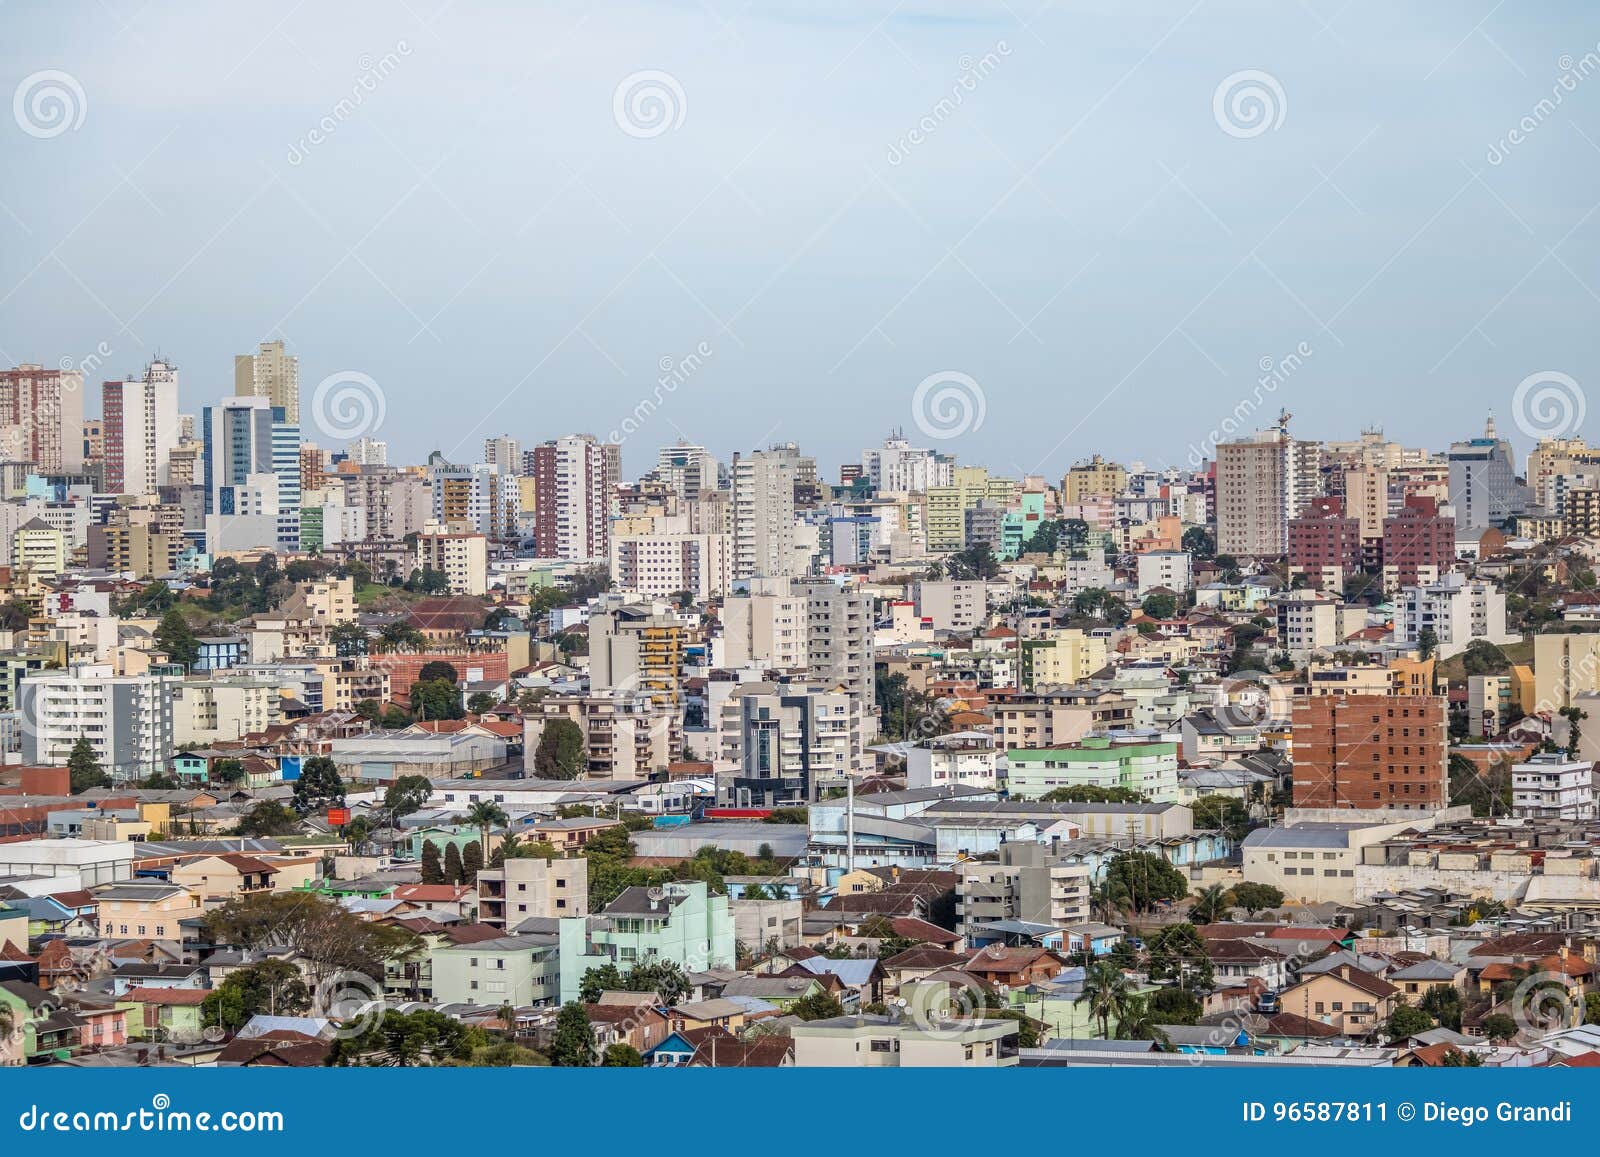 aerial view of caxias do sul city - caxias do sul, rio grande do sul, brazil